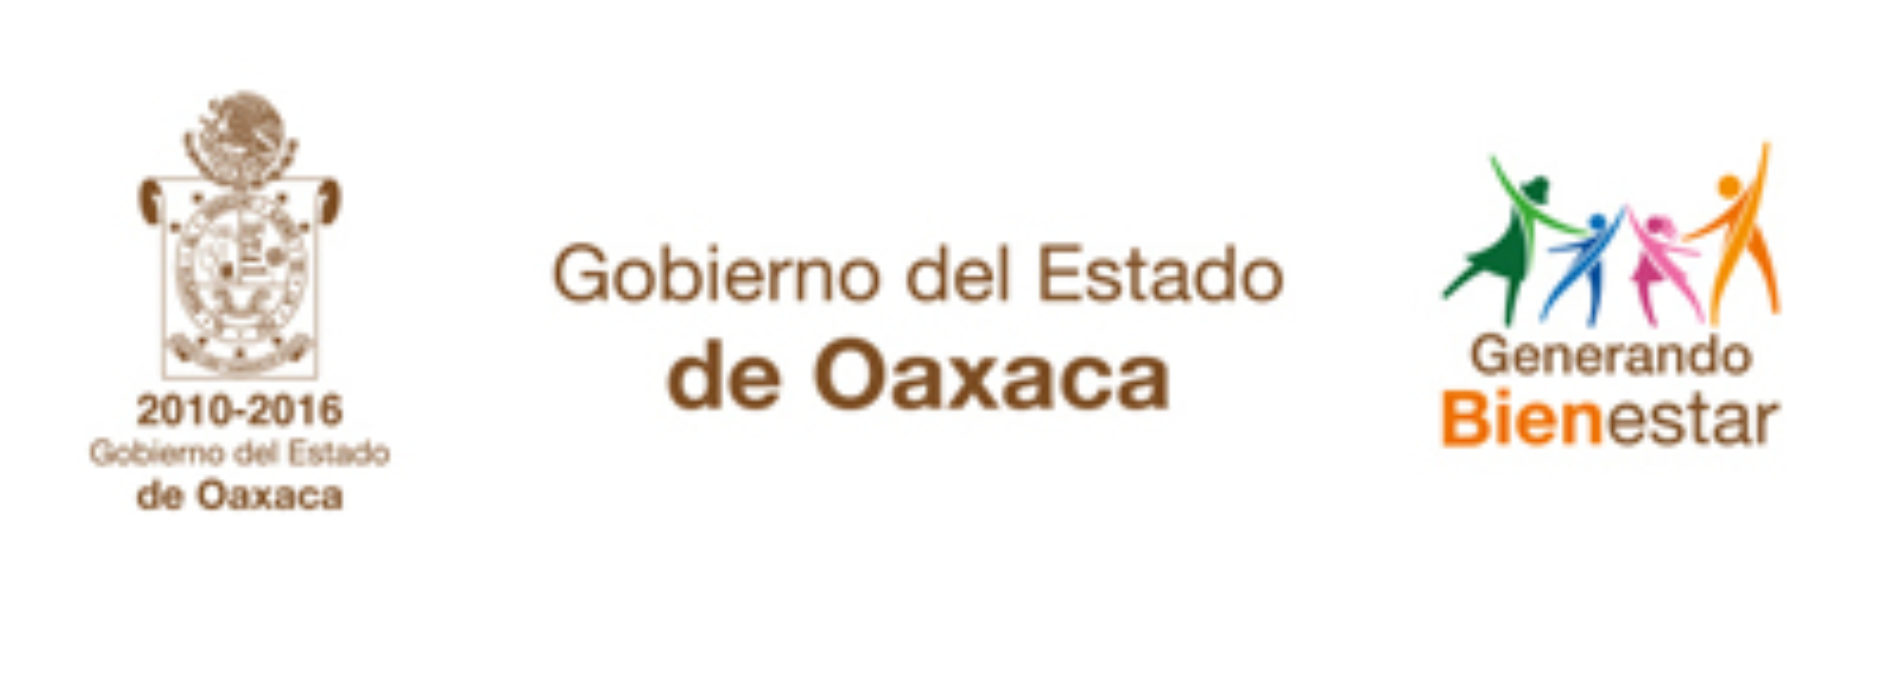 Reforma Educativa garantiza gratuidad de los servicios escolares en Oaxaca: IEEPO